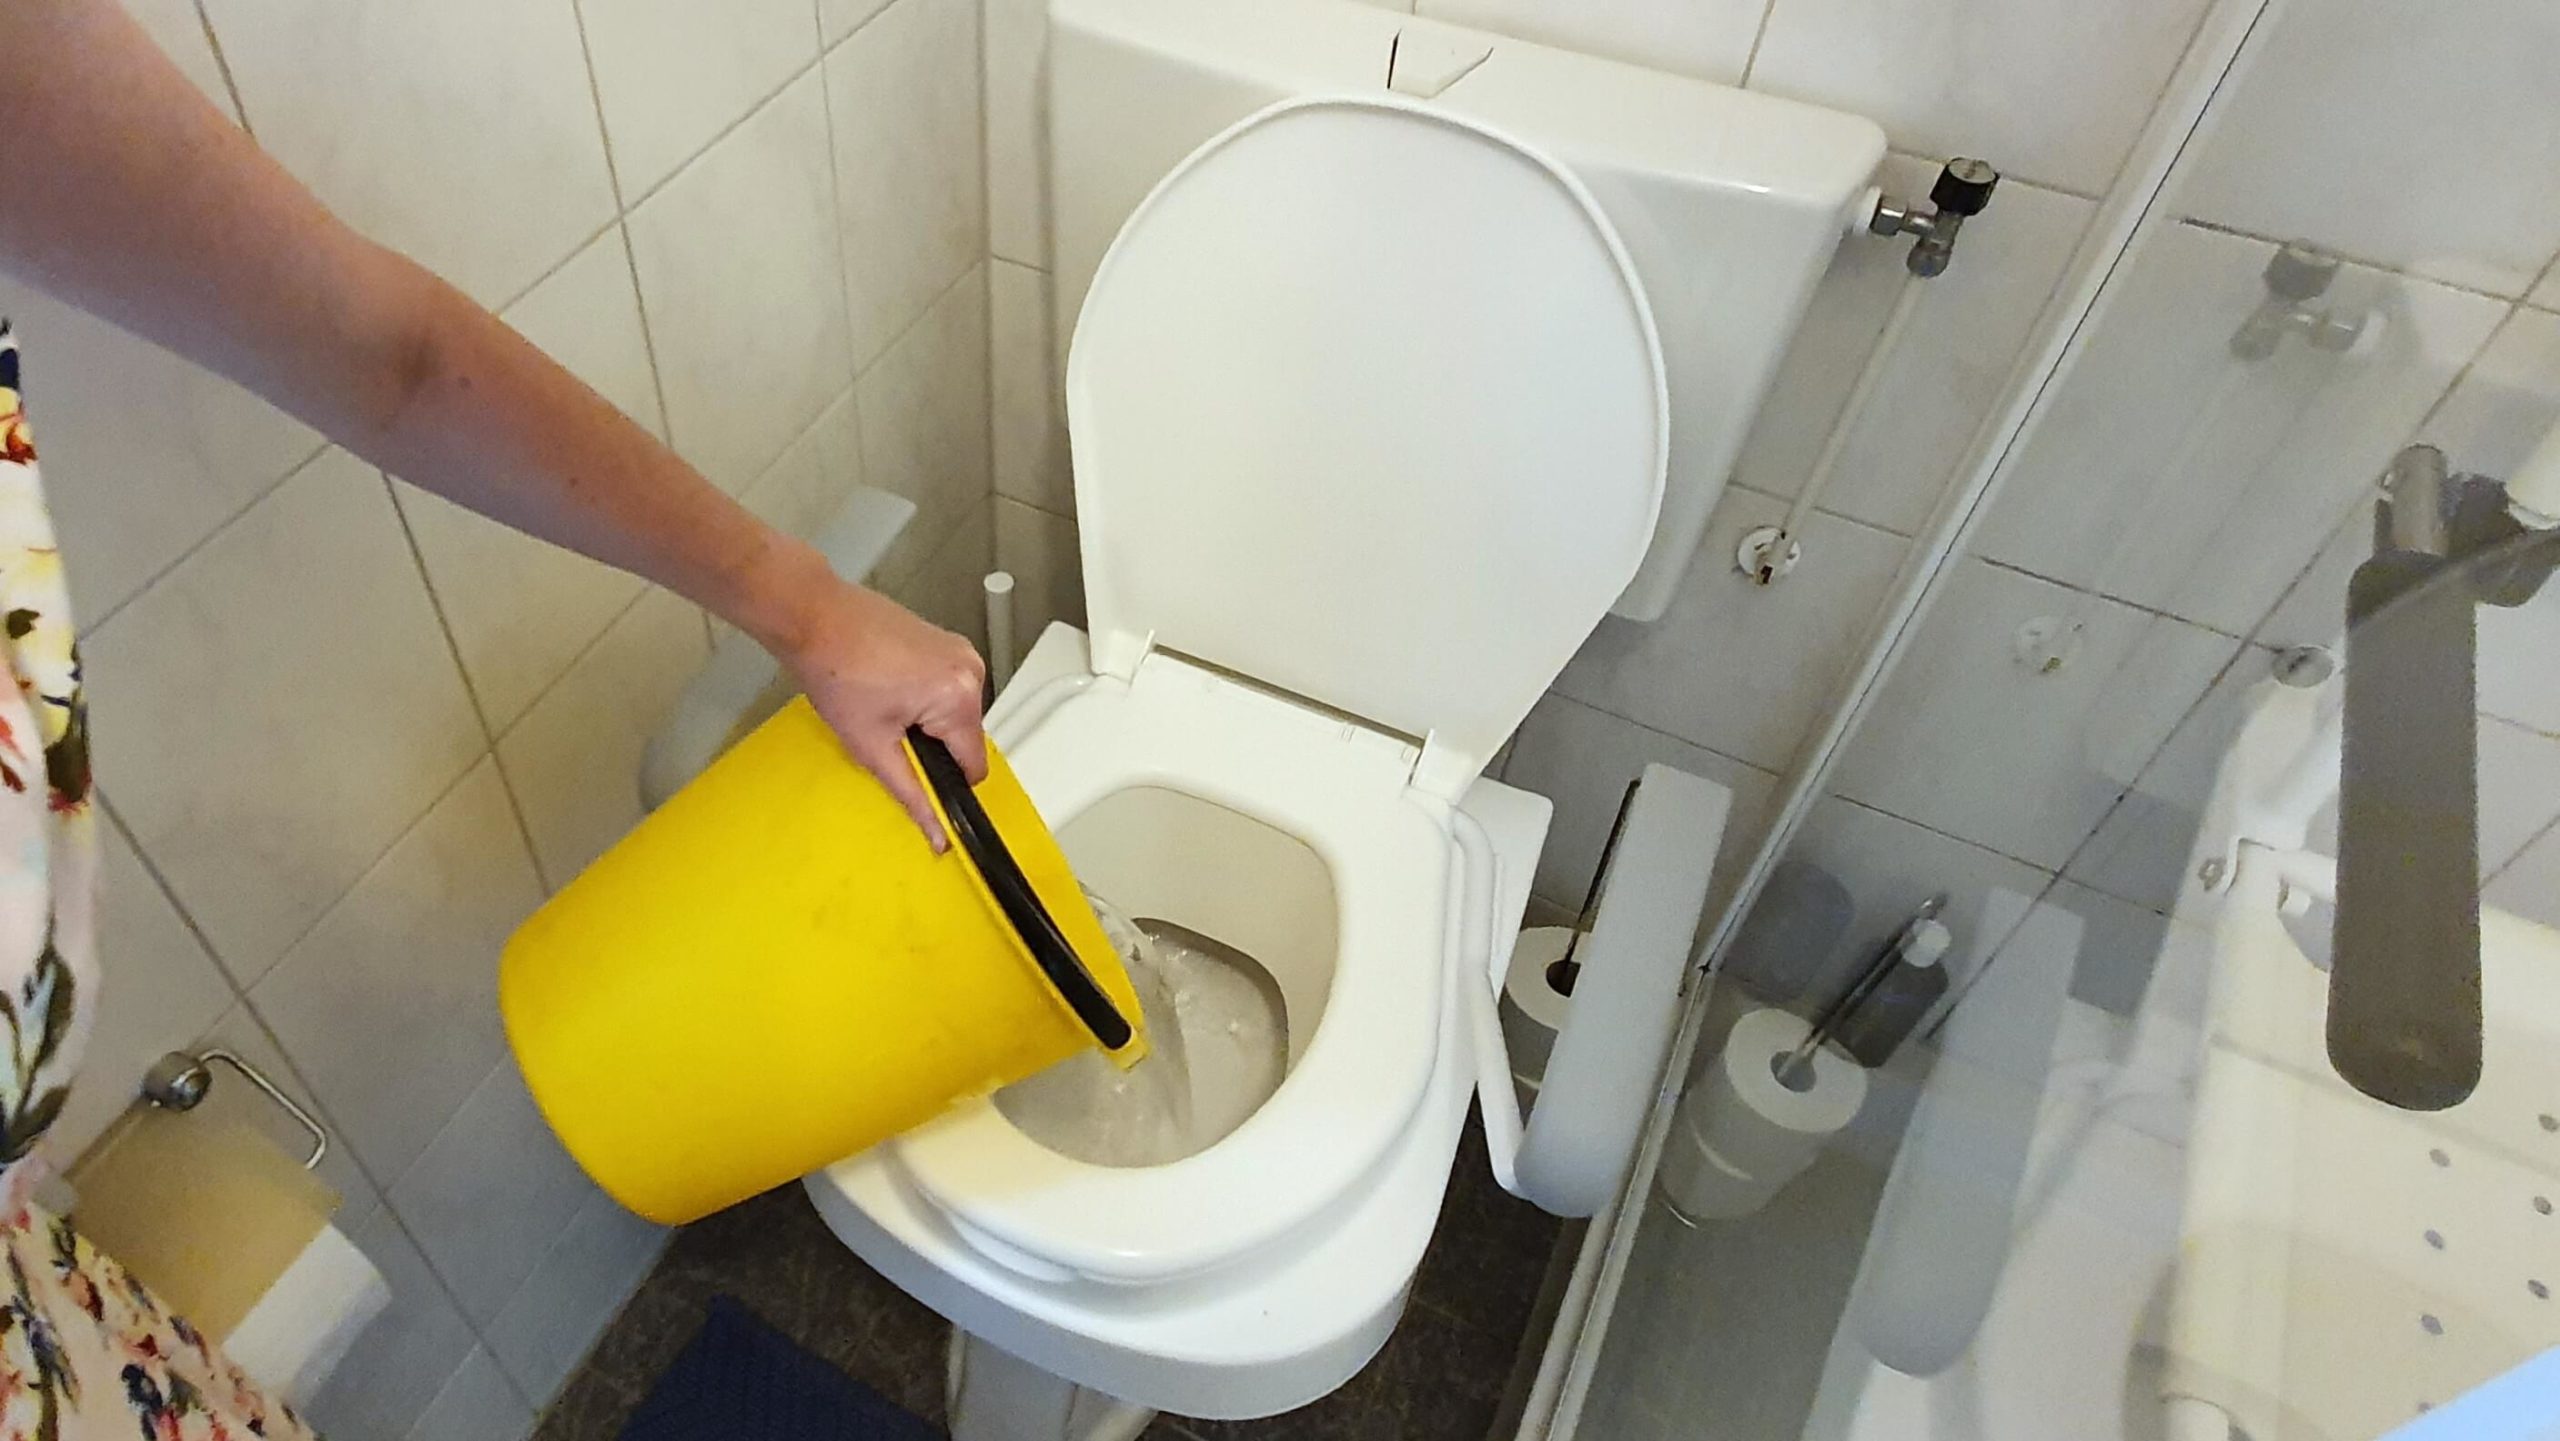 software kiespijn Gewaad Zeg nee tegen schoon drinkwater door de wc - RaGaSto